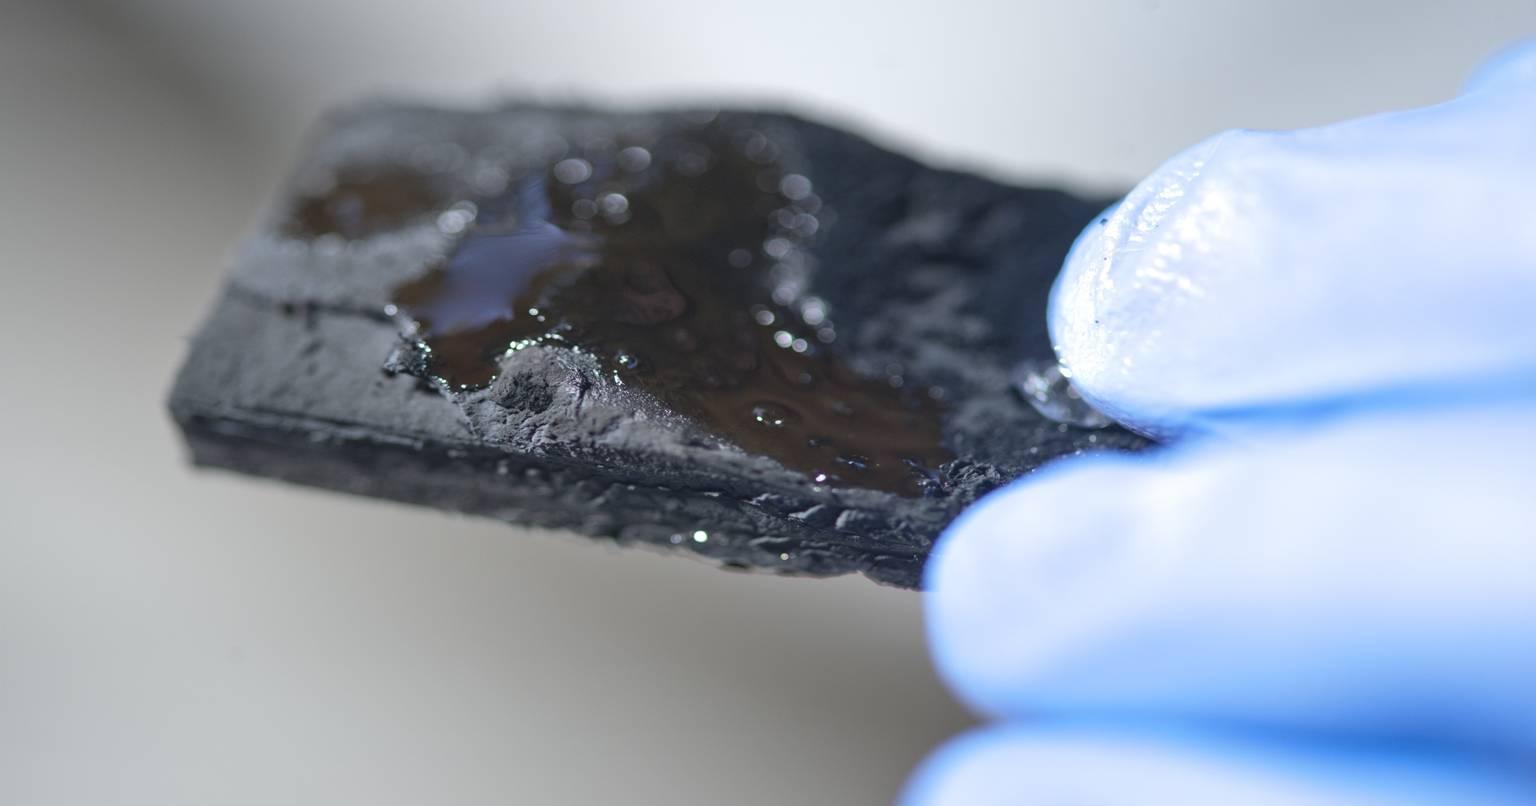 अभी तक का सबसे सफल आविष्कार, वैज्ञानिकों ने बनाई ऐसी नैनोट्यूब जो पानी को करेगी शत-प्रतिशत साफ